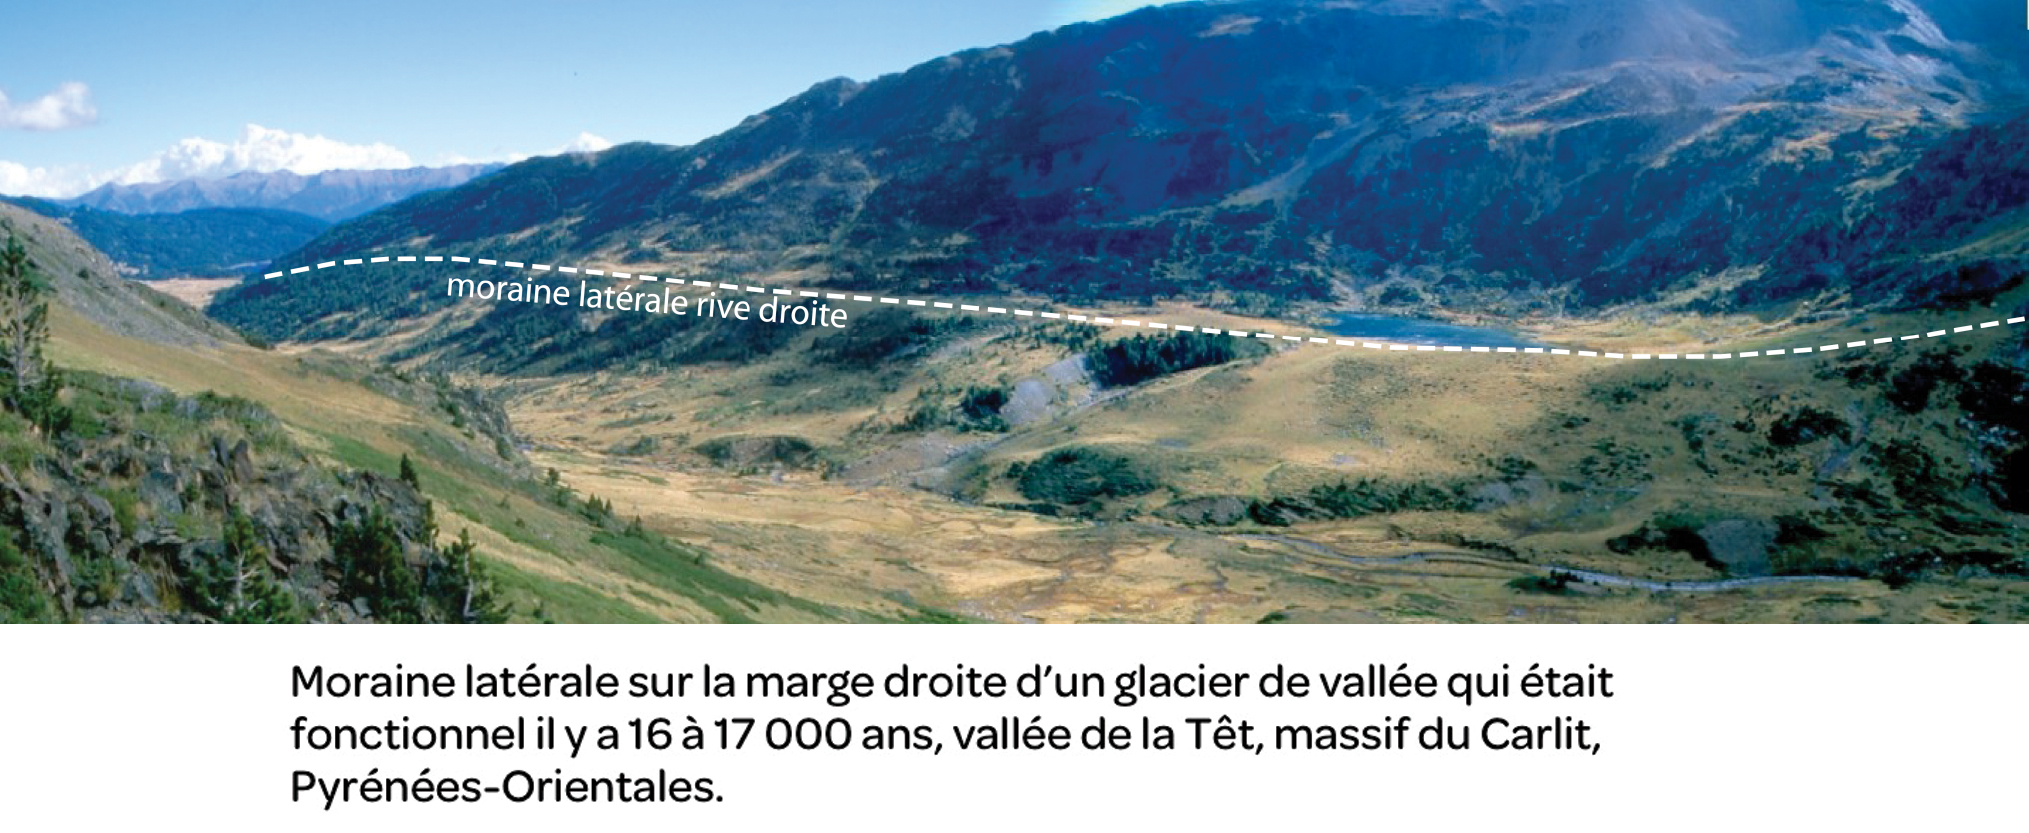 Moraine latérale sur la marge droite d'un glacier de vallée qui était fonctionnel il y a 16 à 17 000 ans, vallée de la Têt, massif du Carlit, Pyrénnées-Orientales.